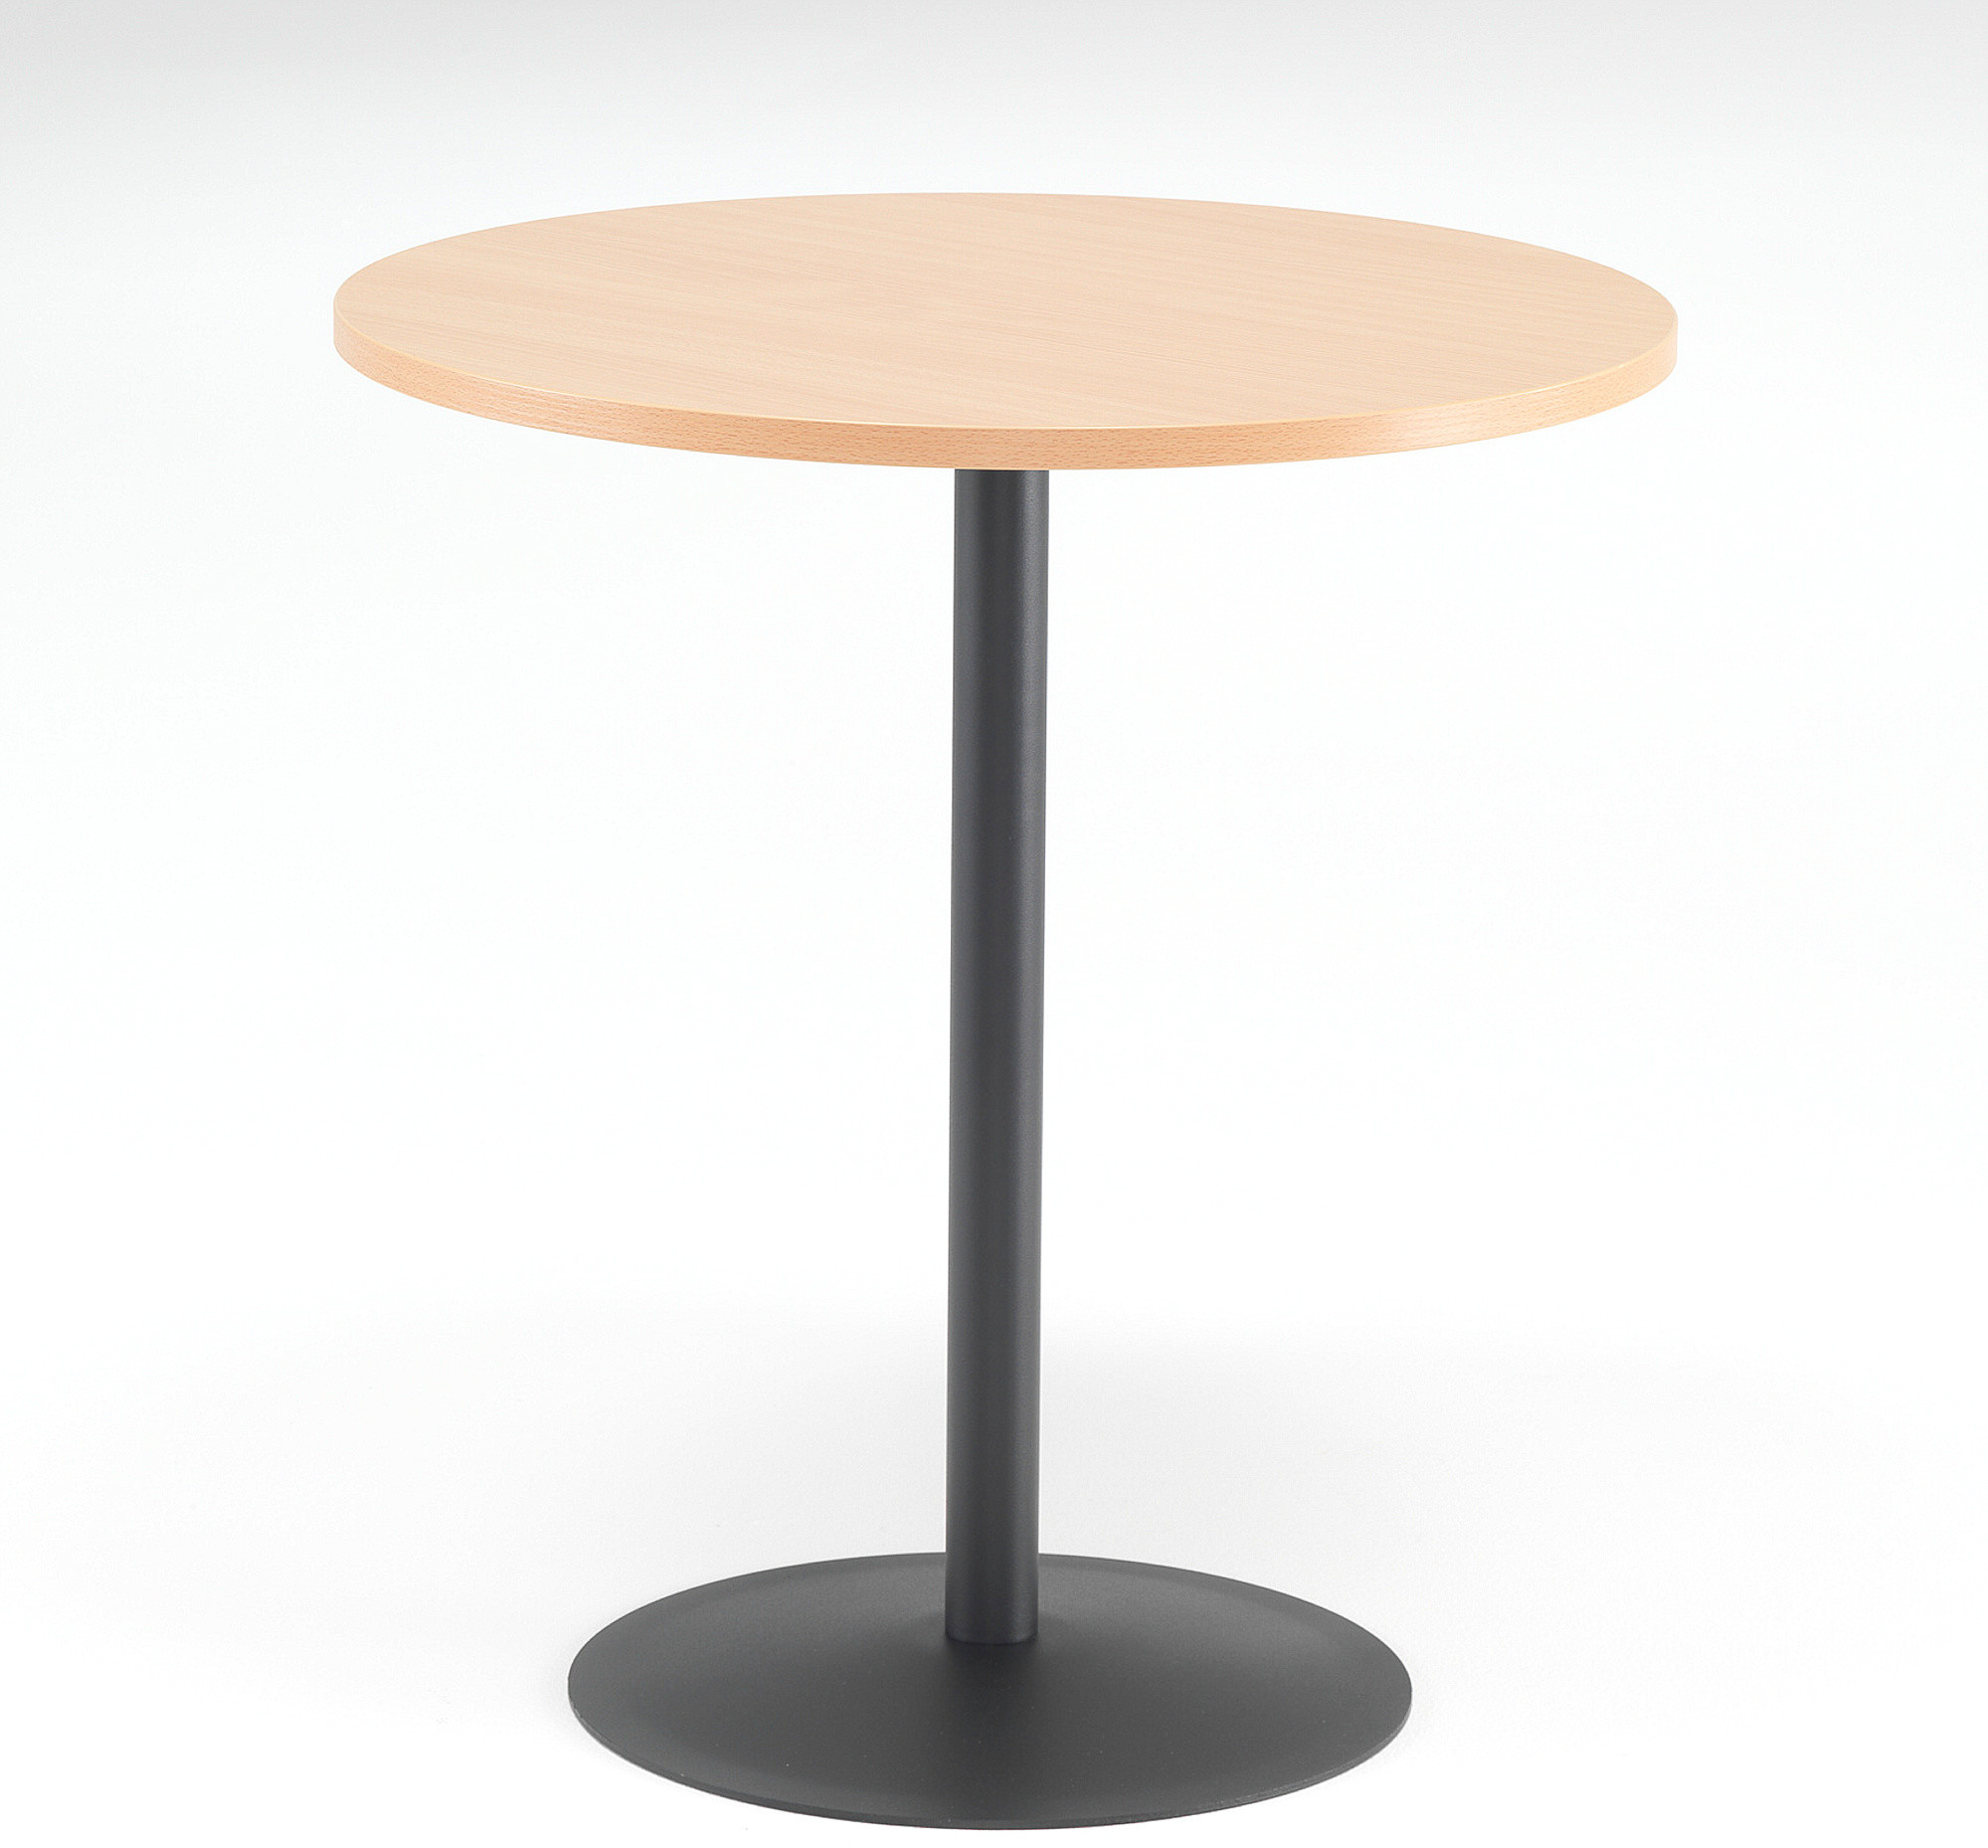 AJ Okrągły stół do kawiarni laminowany na kolor buk 144531